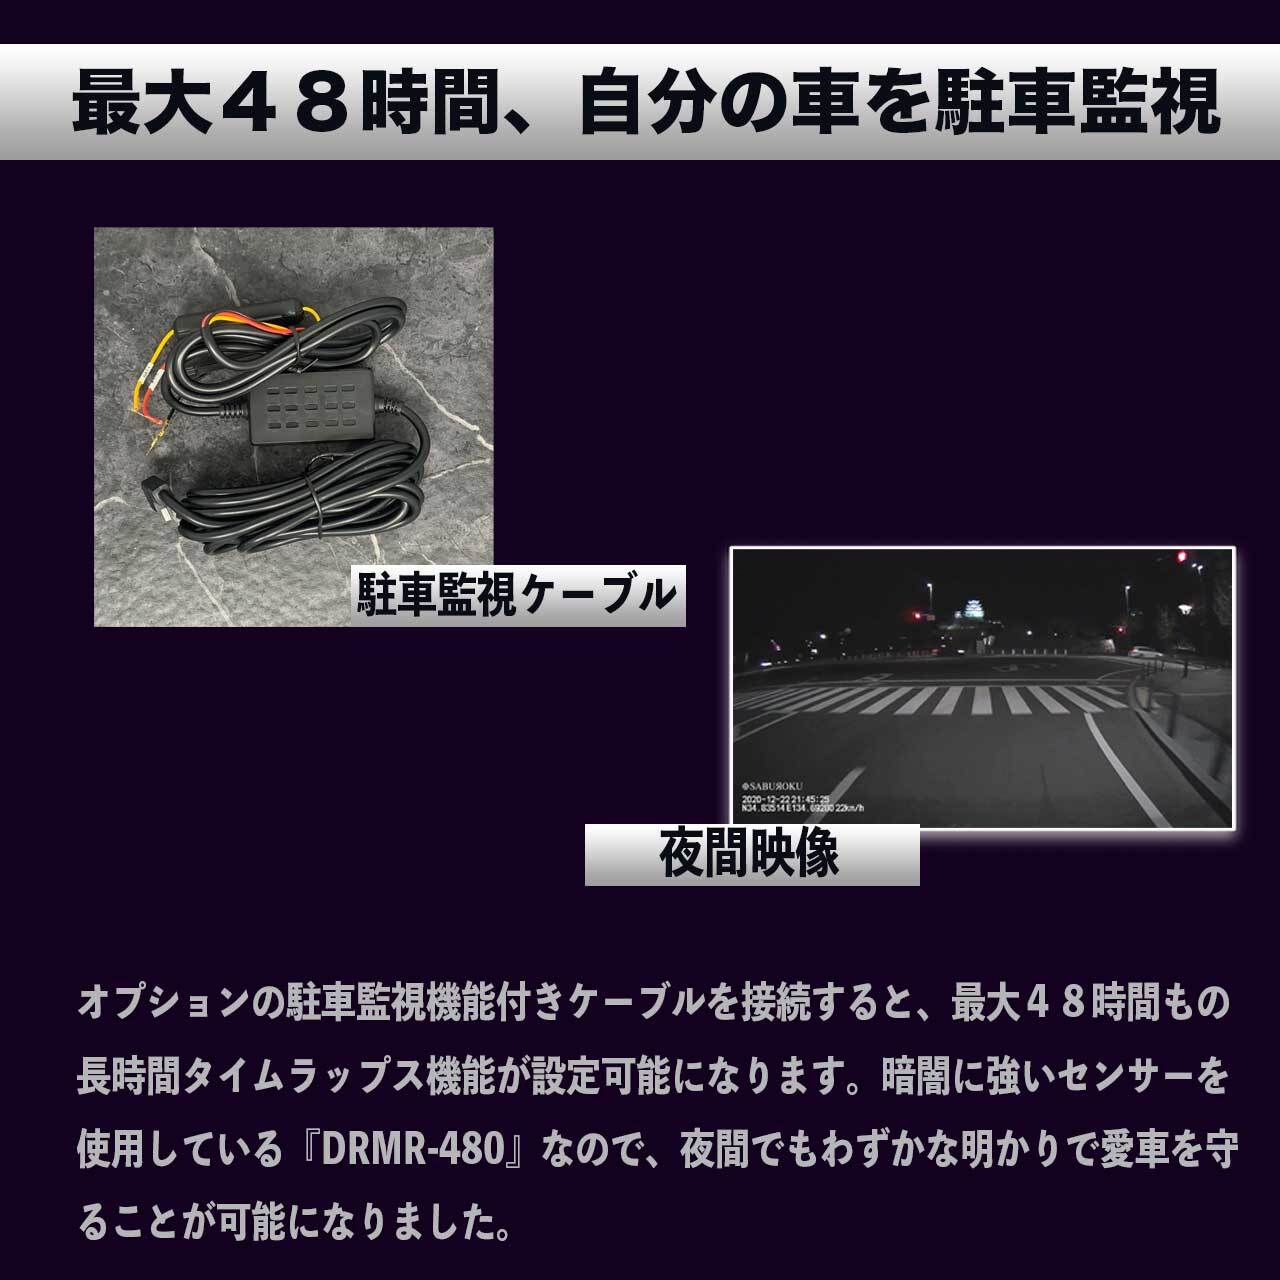 常時駐車監視ケーブル デジタルインナーミラー Drmr 480 専用オプション Saburoku System Online Store